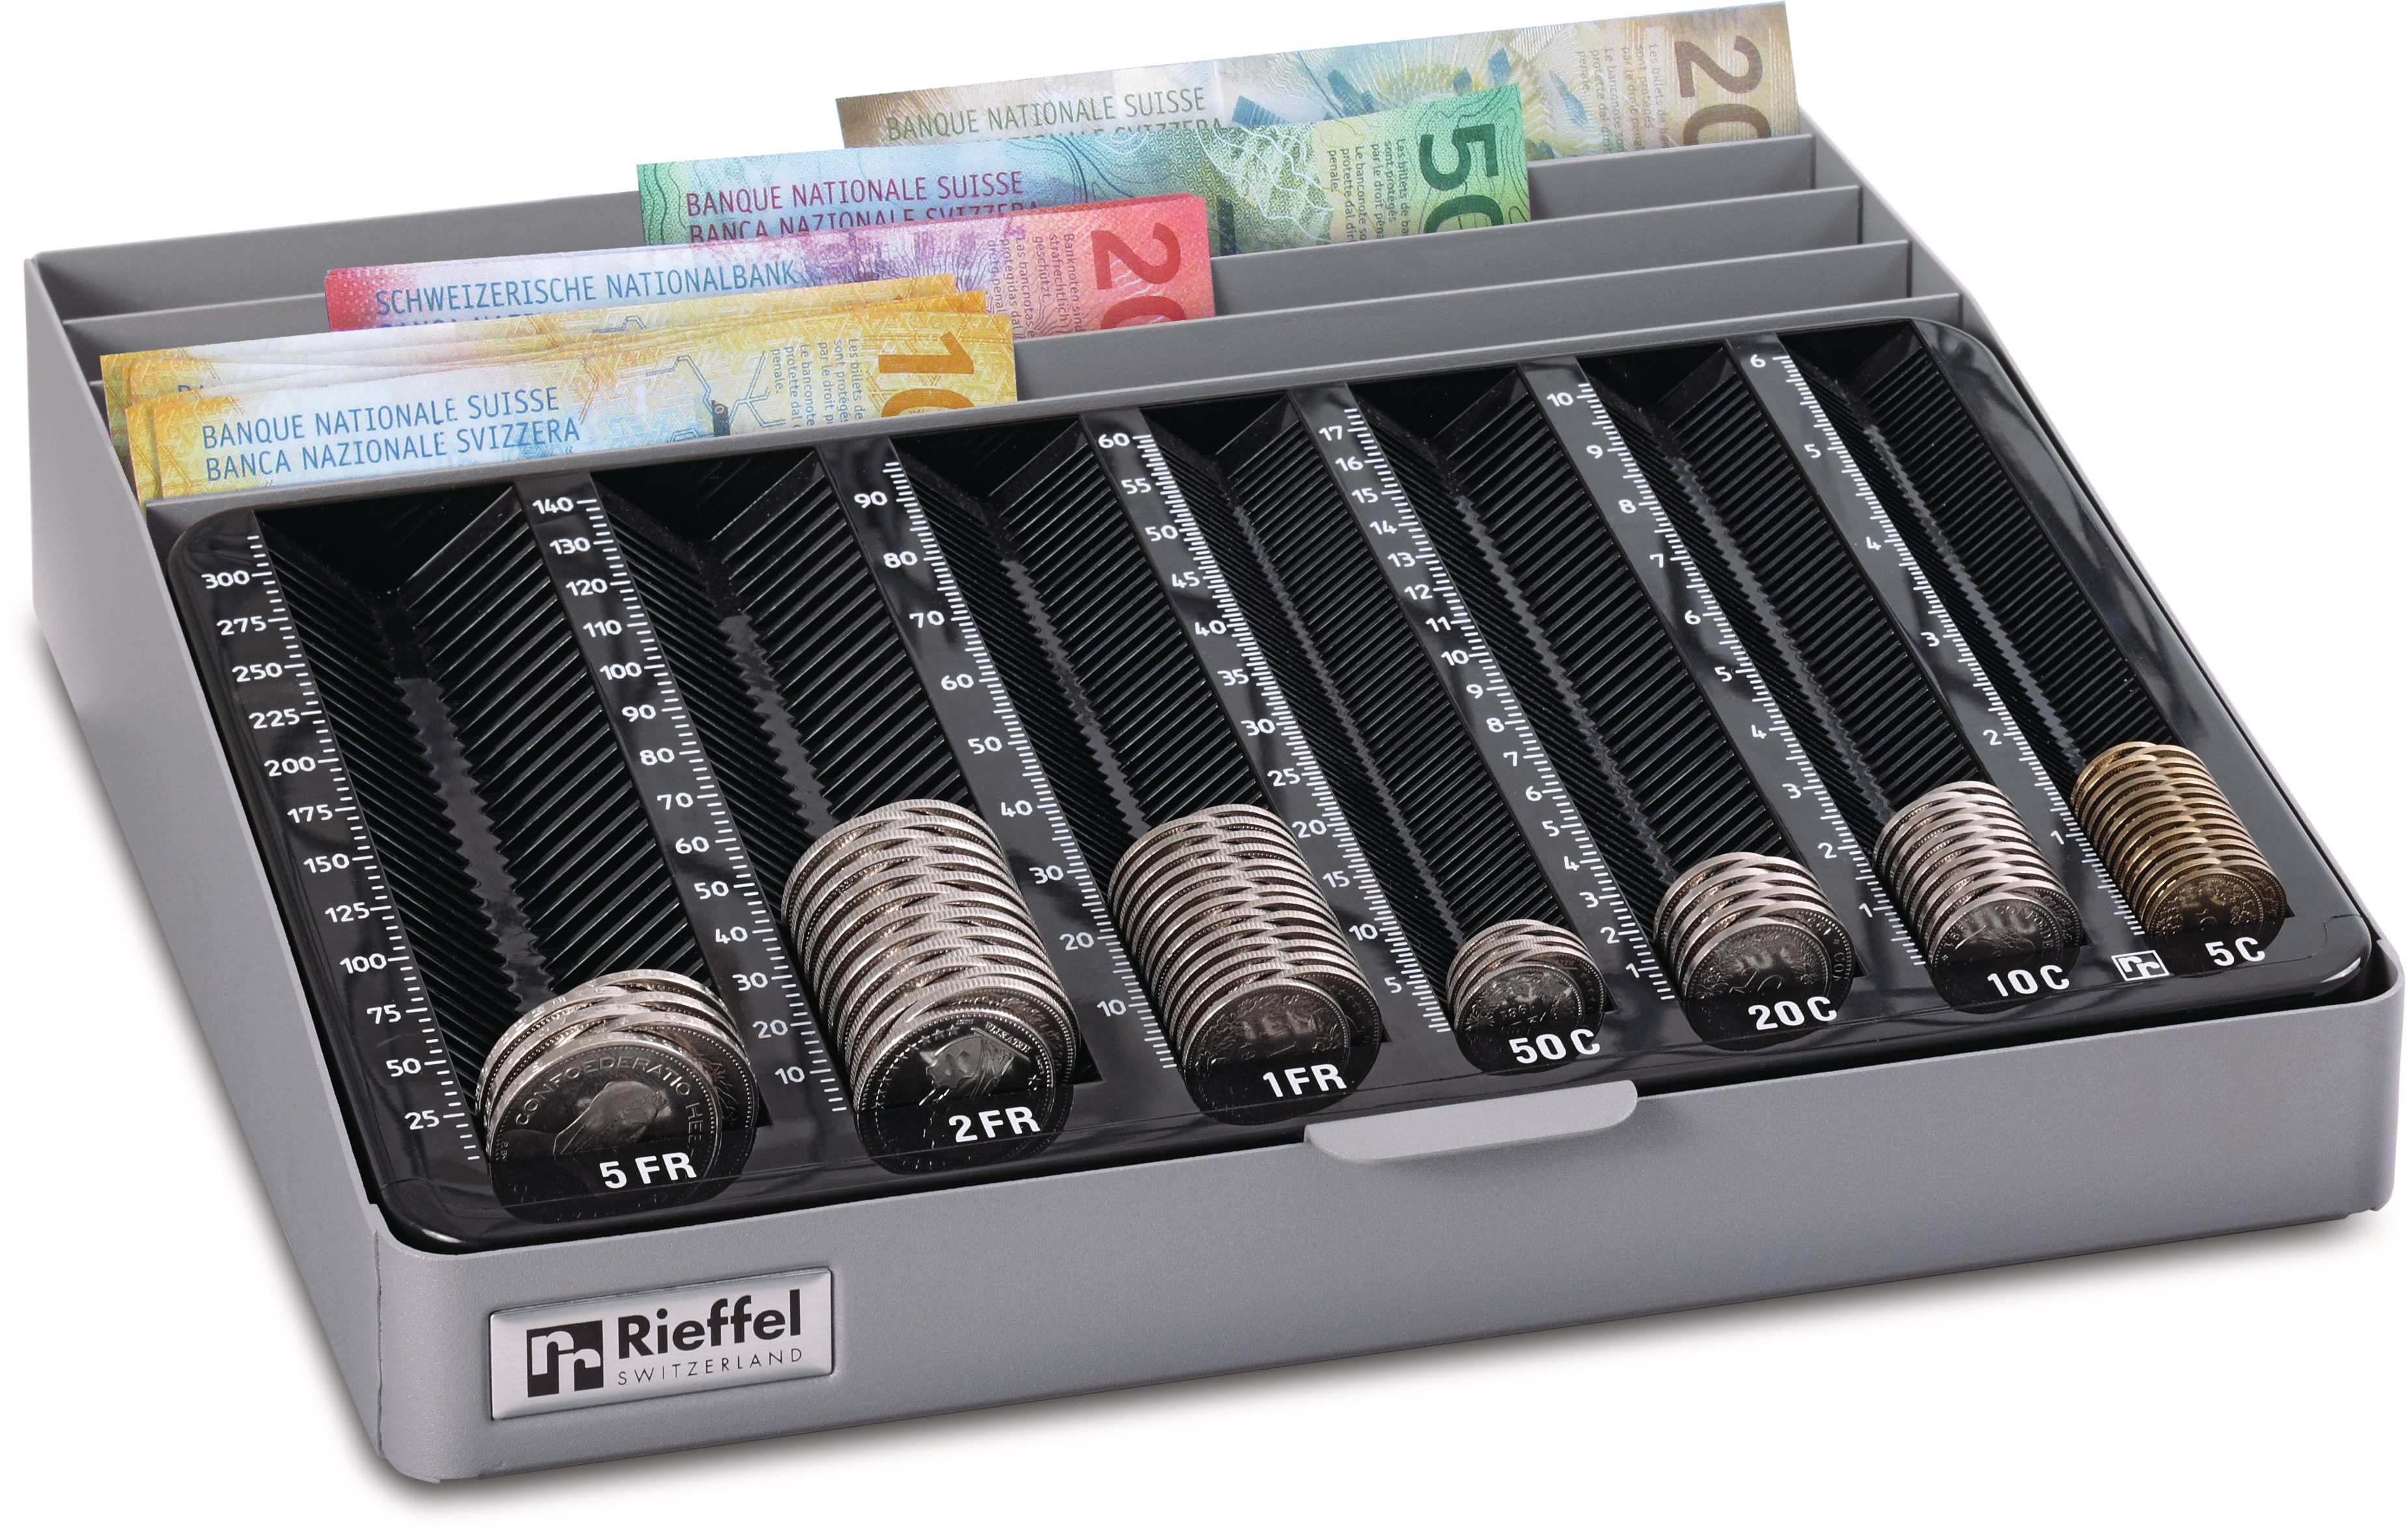 RIEFFEL Geldkassetten MONETAMOB für CHF 282x280x60mm